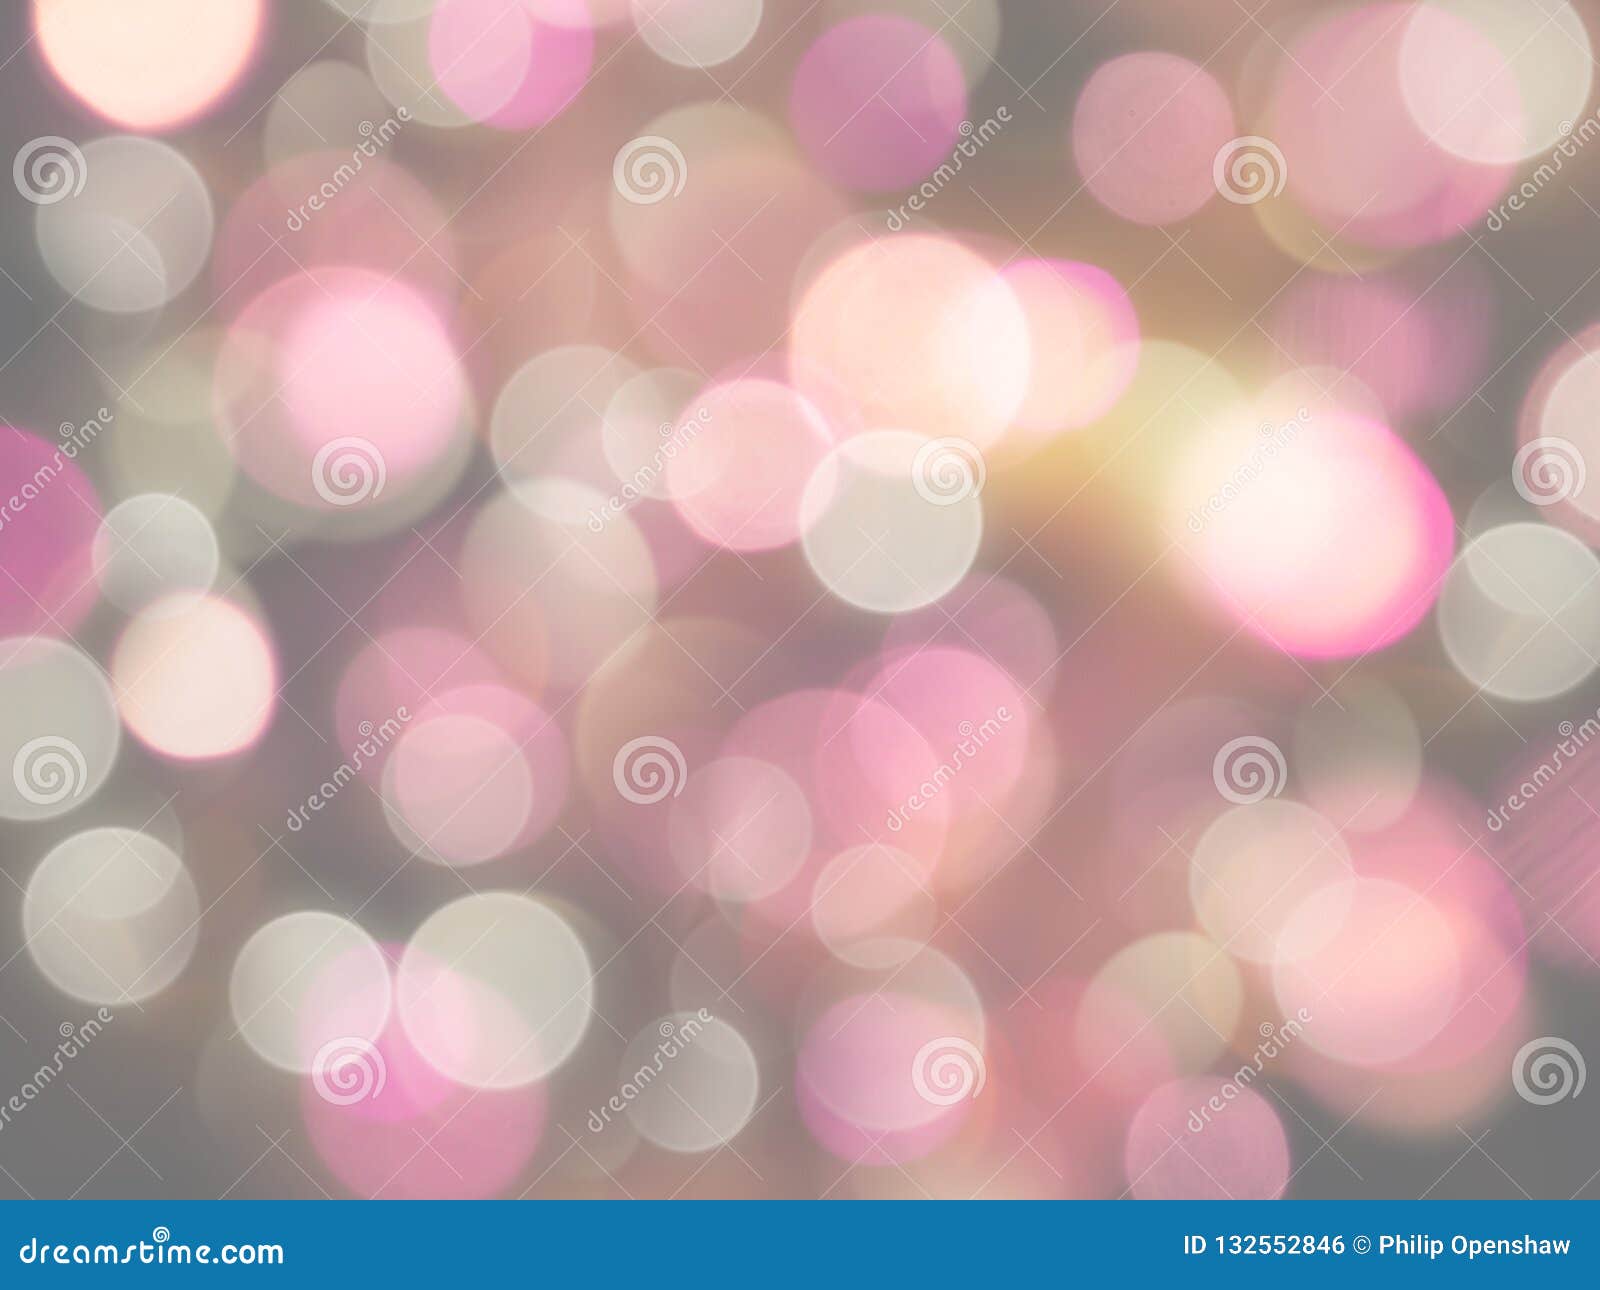 Hình nền hồng và trắng với ánh sáng nhòe tròn rực rỡ tạo ra một không gian thư giãn và ấm áp. Hãy chiêm ngưỡng hình ảnh này để cảm nhận được sự thanh thoát và thư thái.